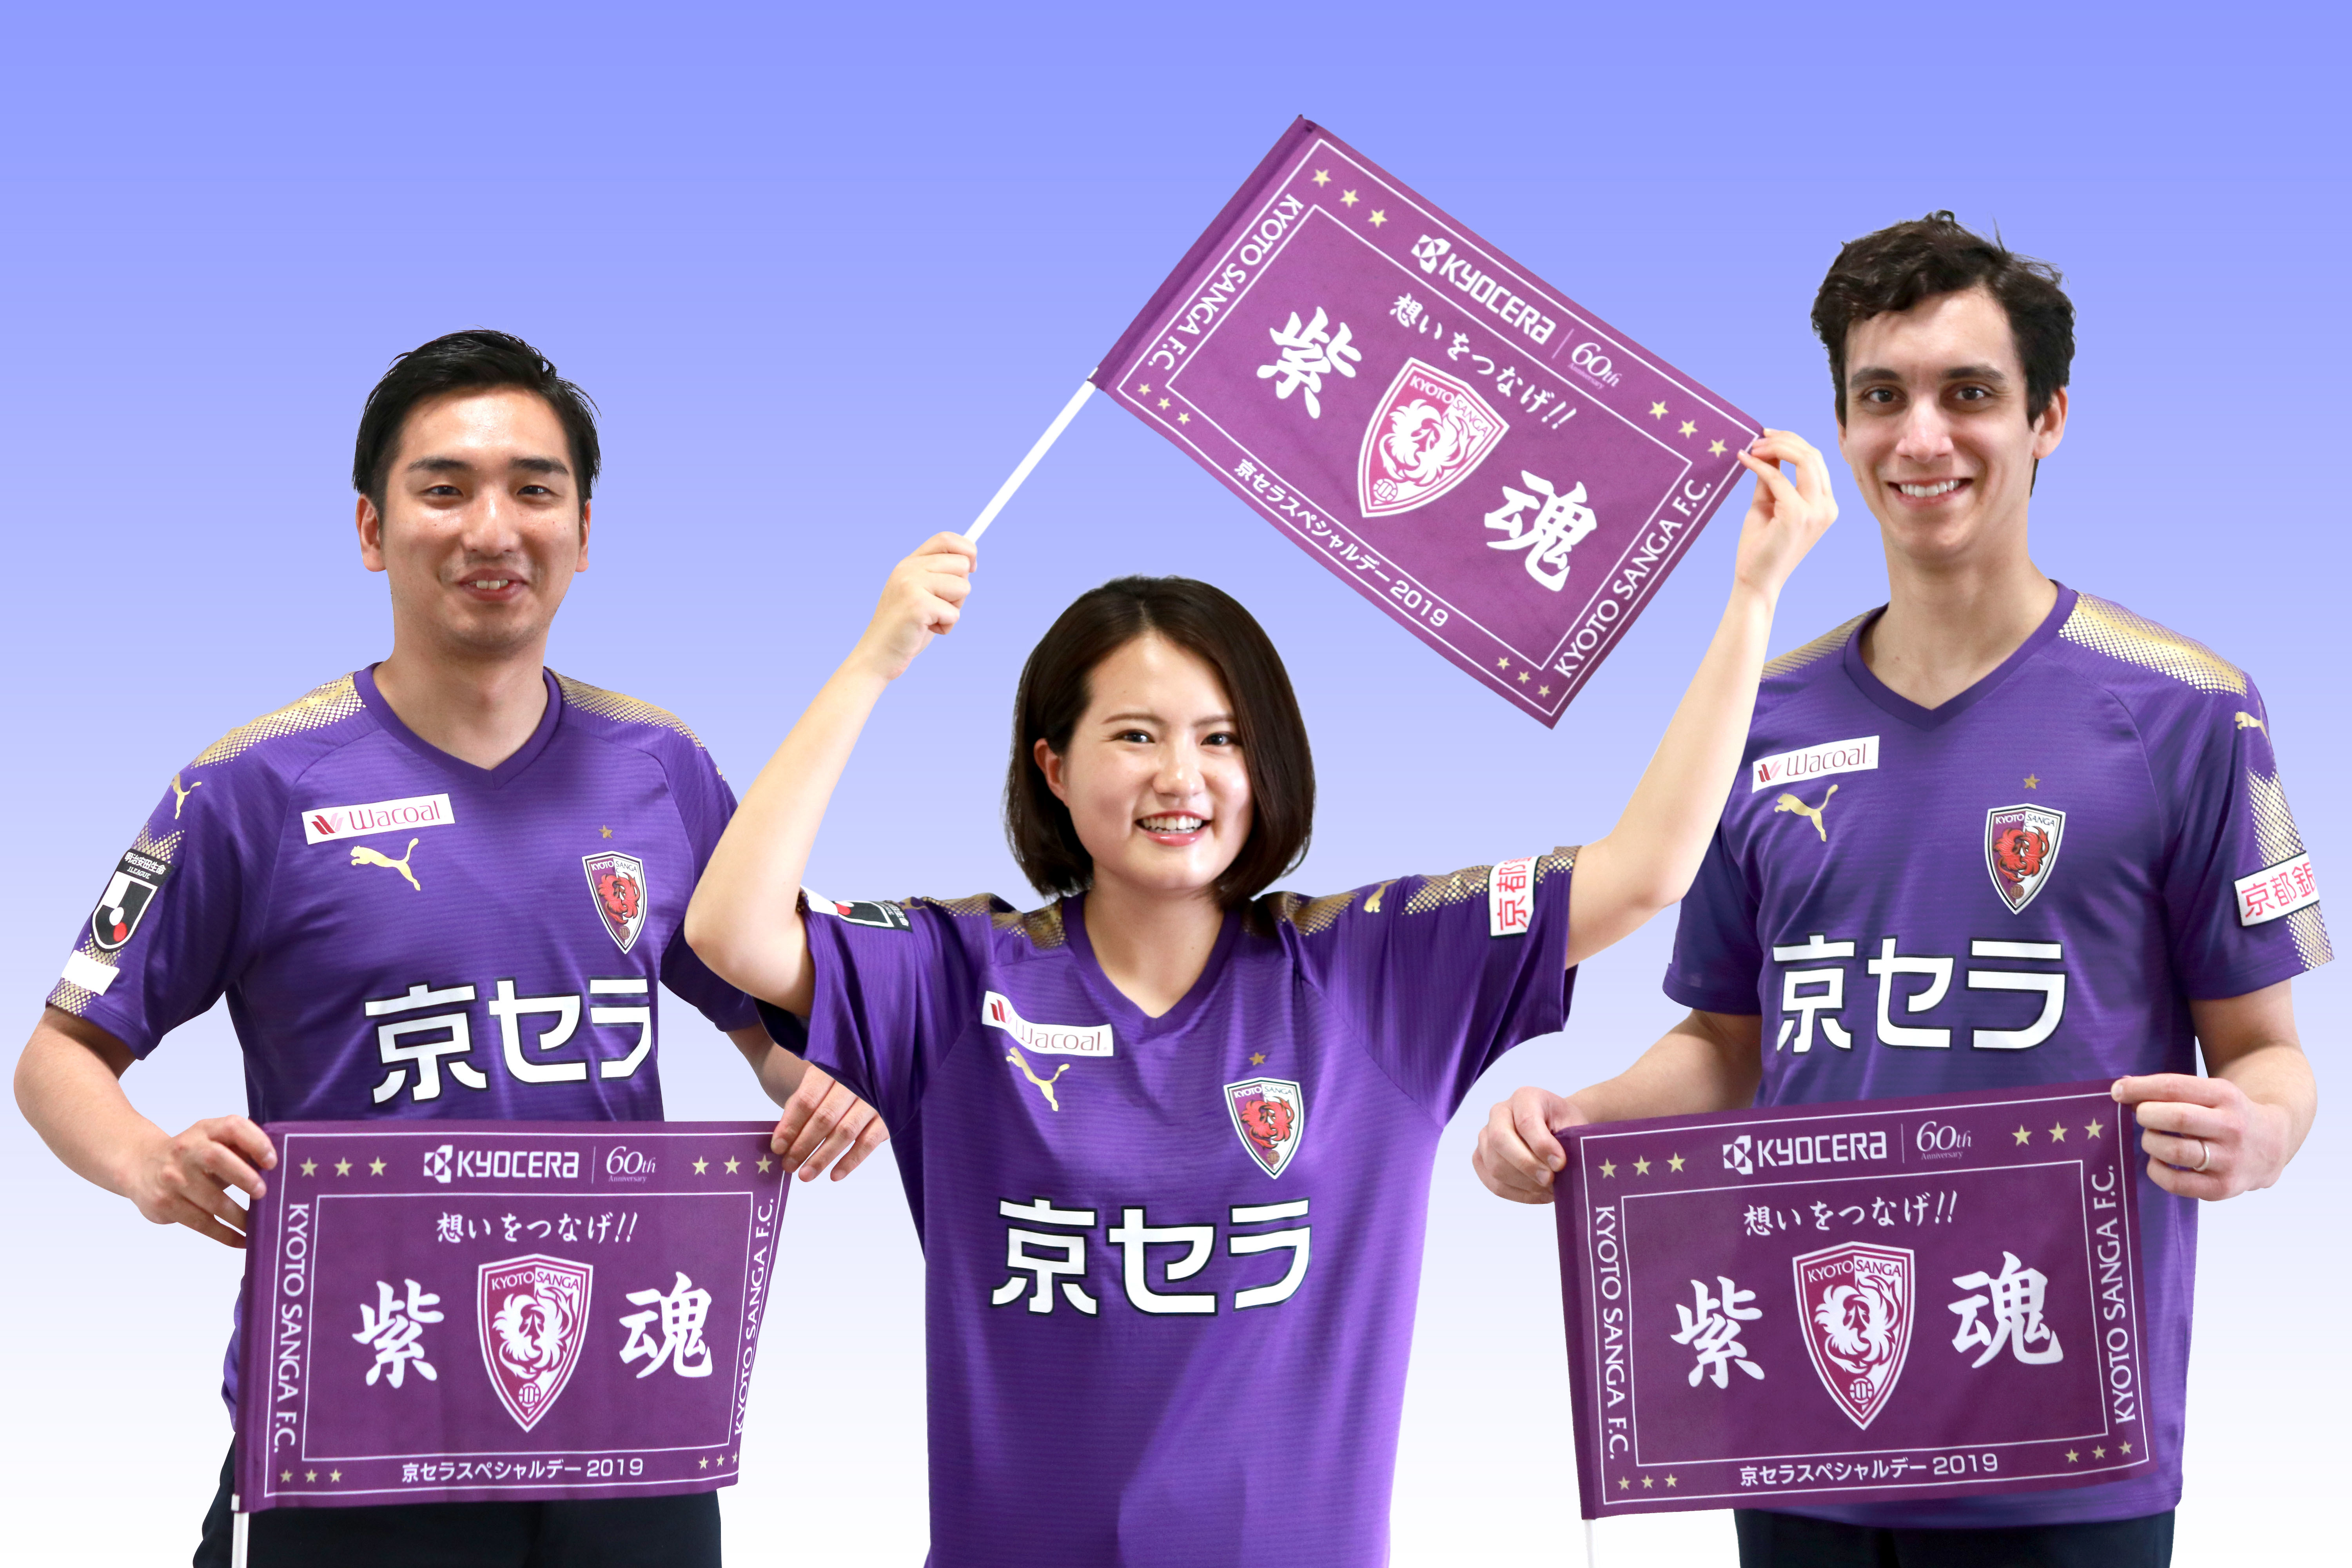 京都サンガF.C.のJ1昇格を願い、熱い想いを選手に届ける
「京セラスペシャルデー2019-想いをつなげ！紫魂」の開催